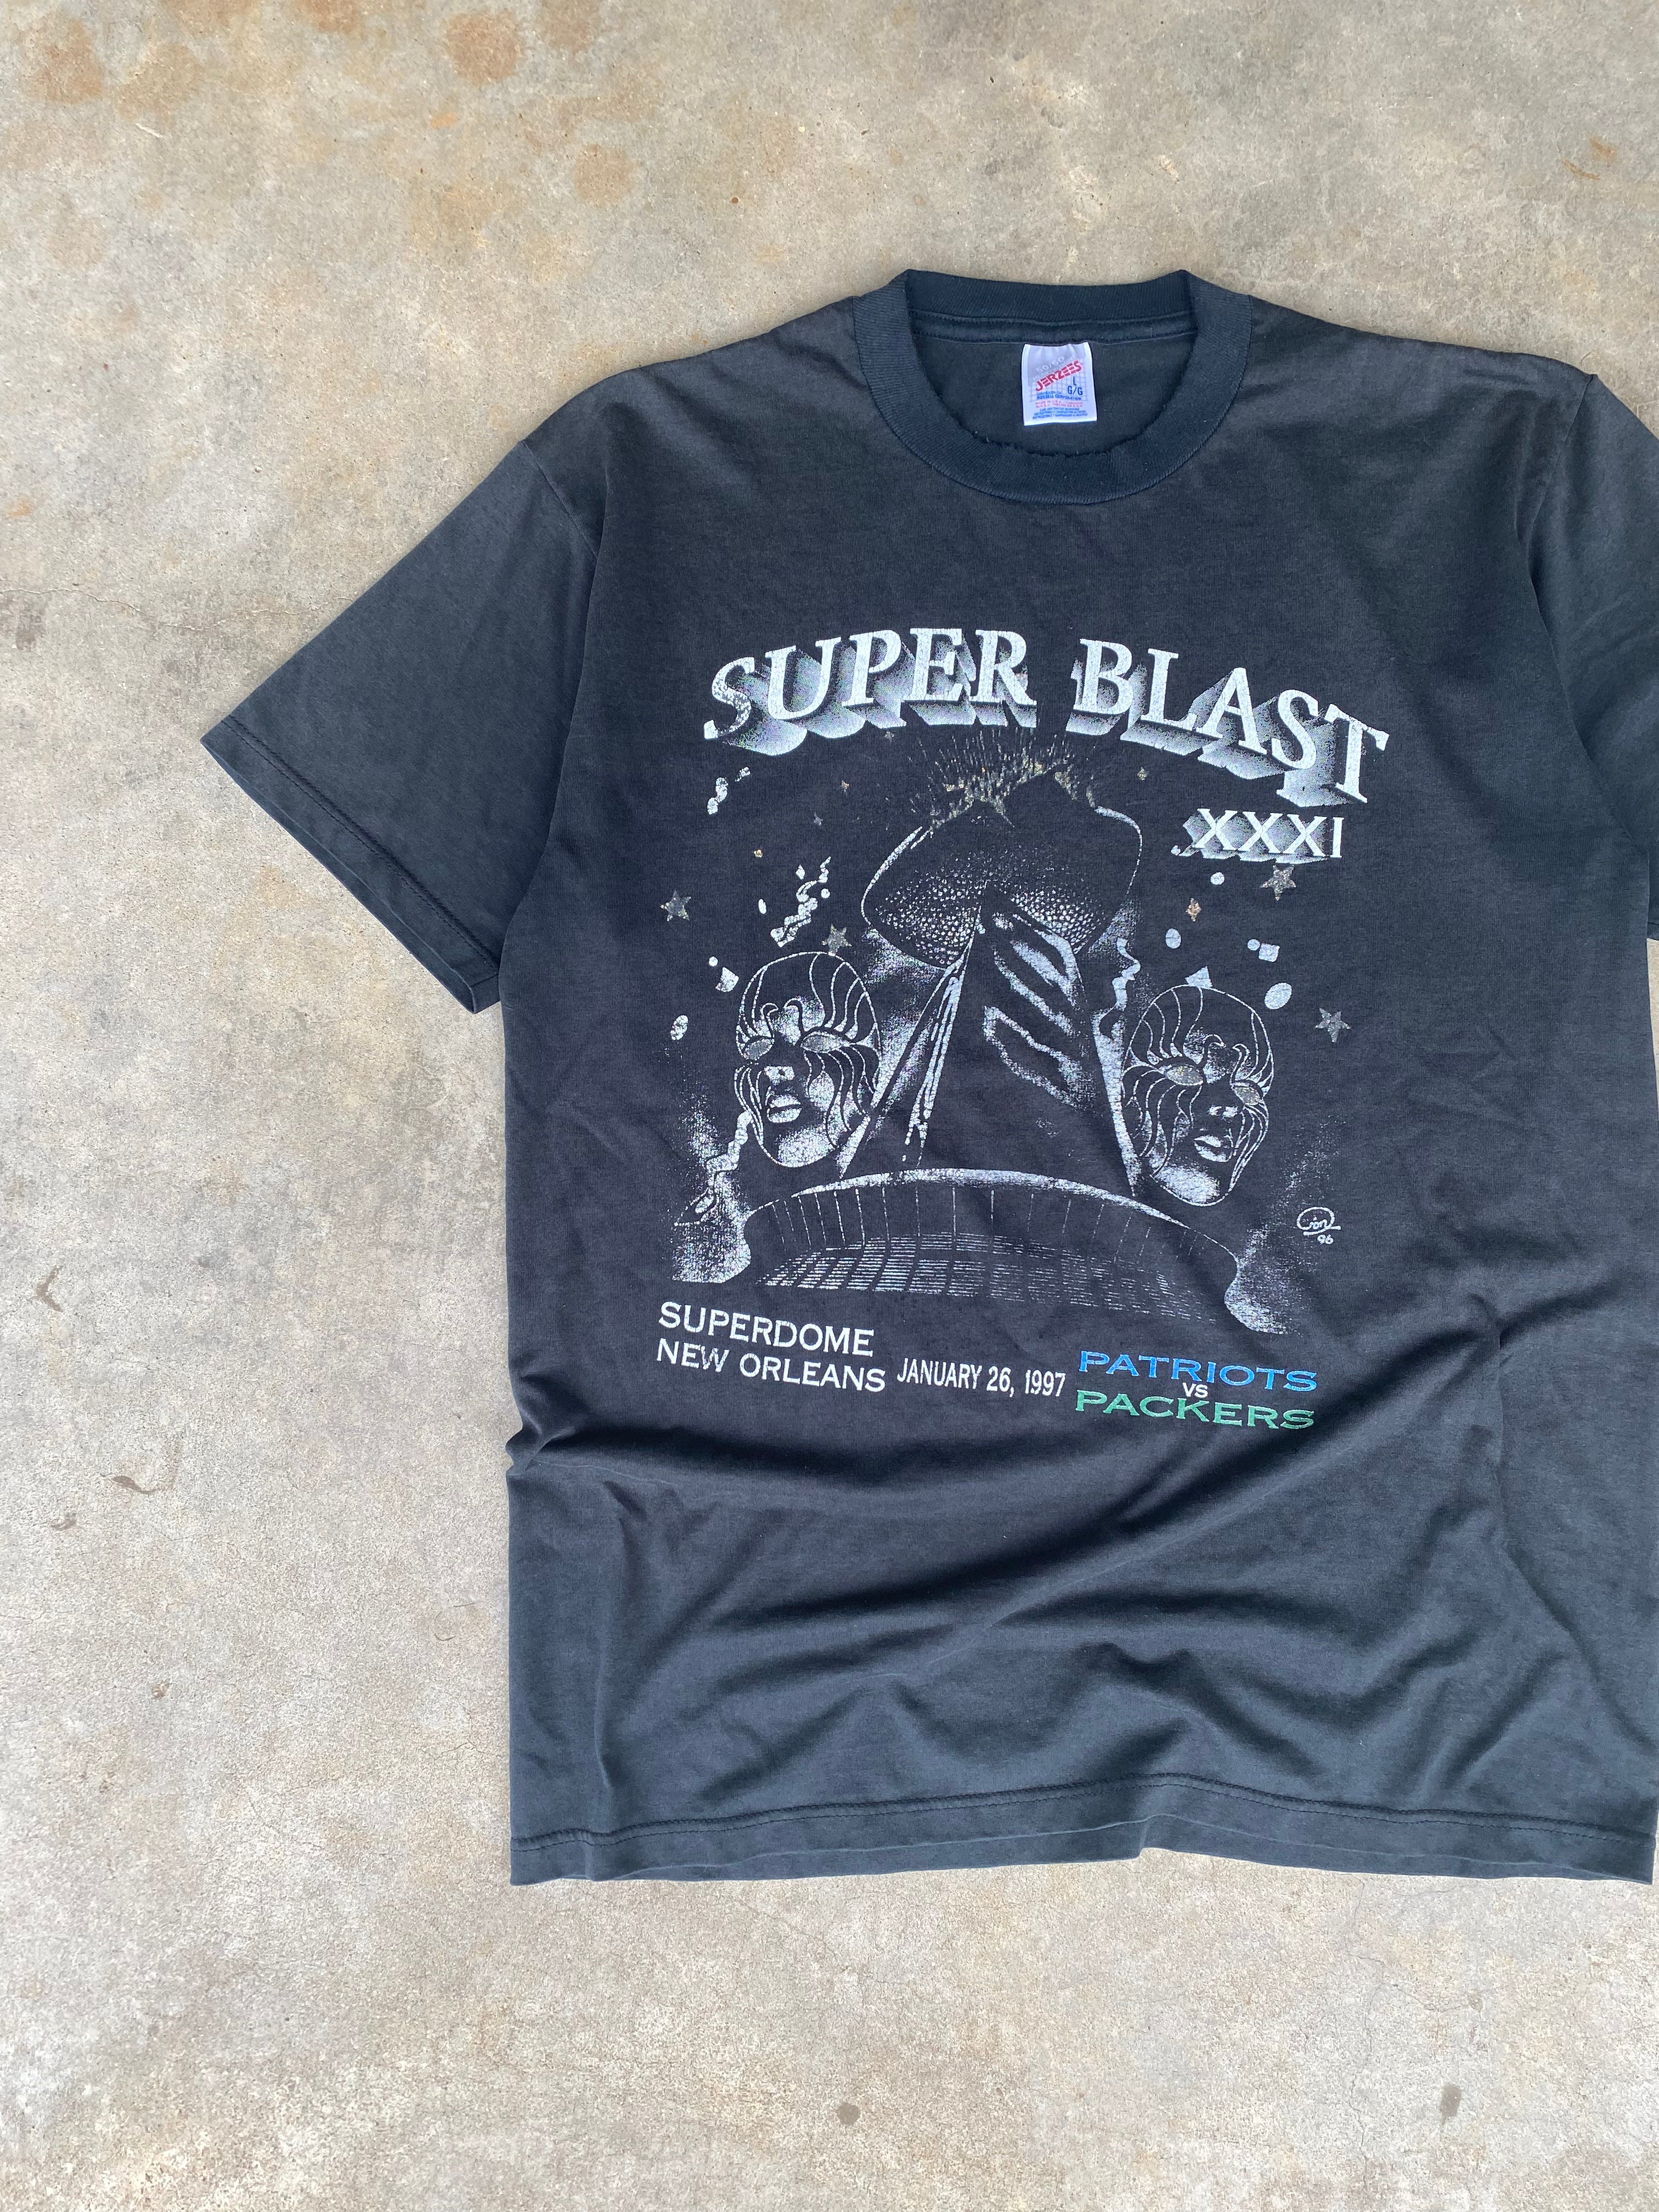 1997 Distressed Super Blast XXXI T-Shirt (L)